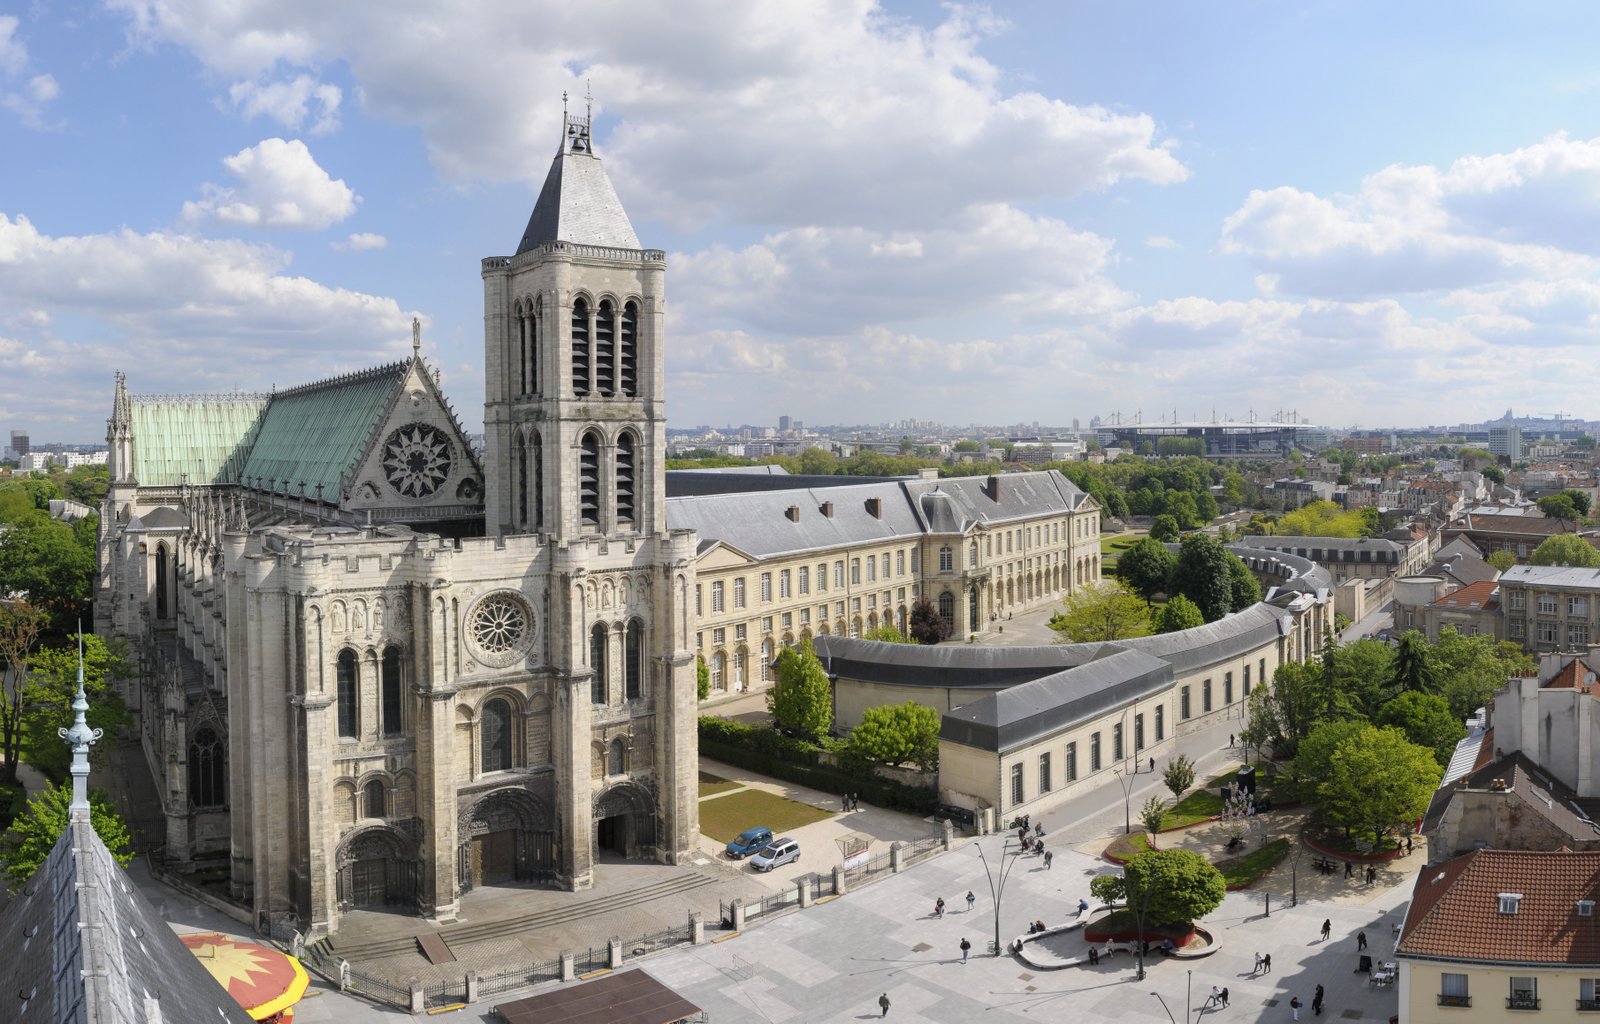 Saint-Denis